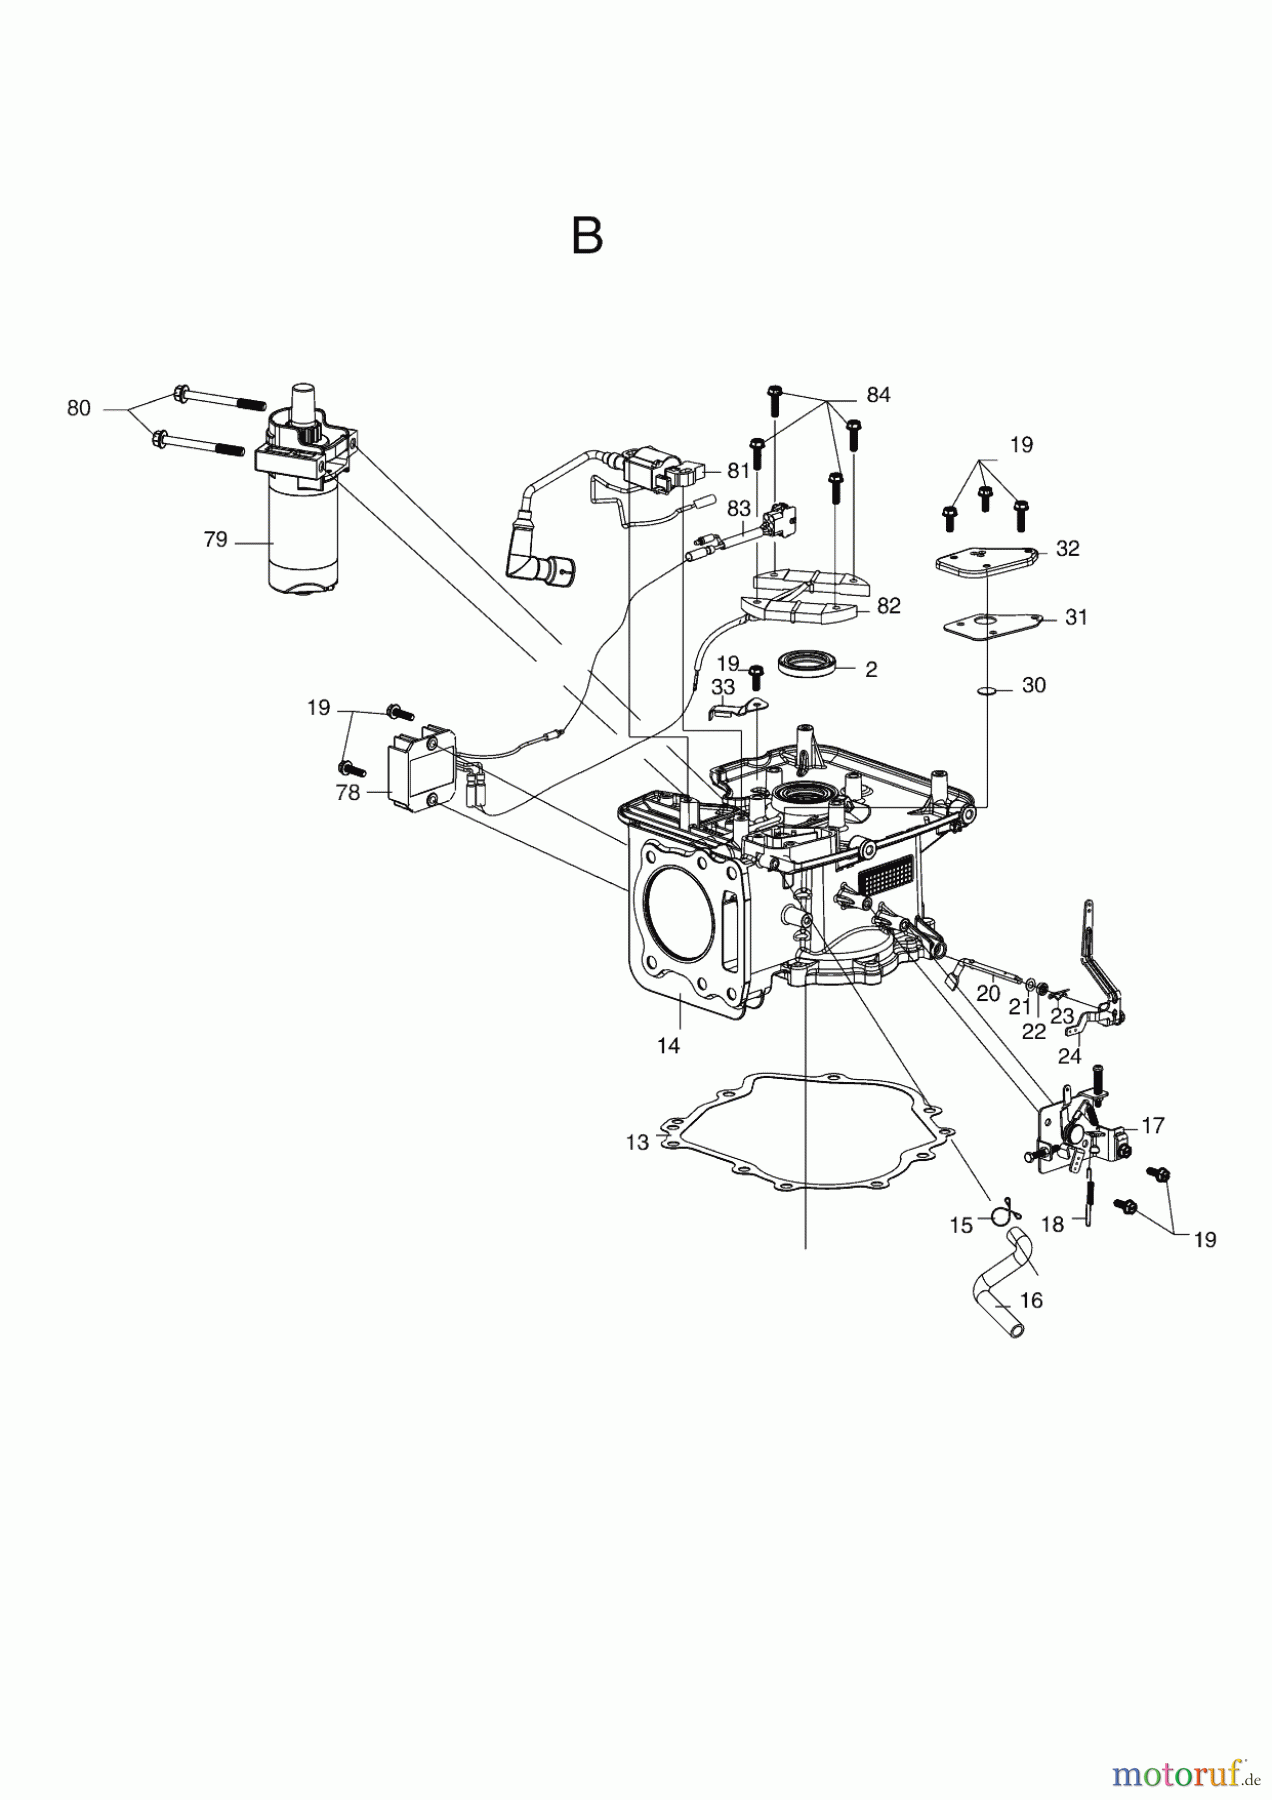  AL-KO Gartentechnik Benzinmotoren B-MOTOR PRO 350 LC1P85FA R9005  06/2018 Seite 2